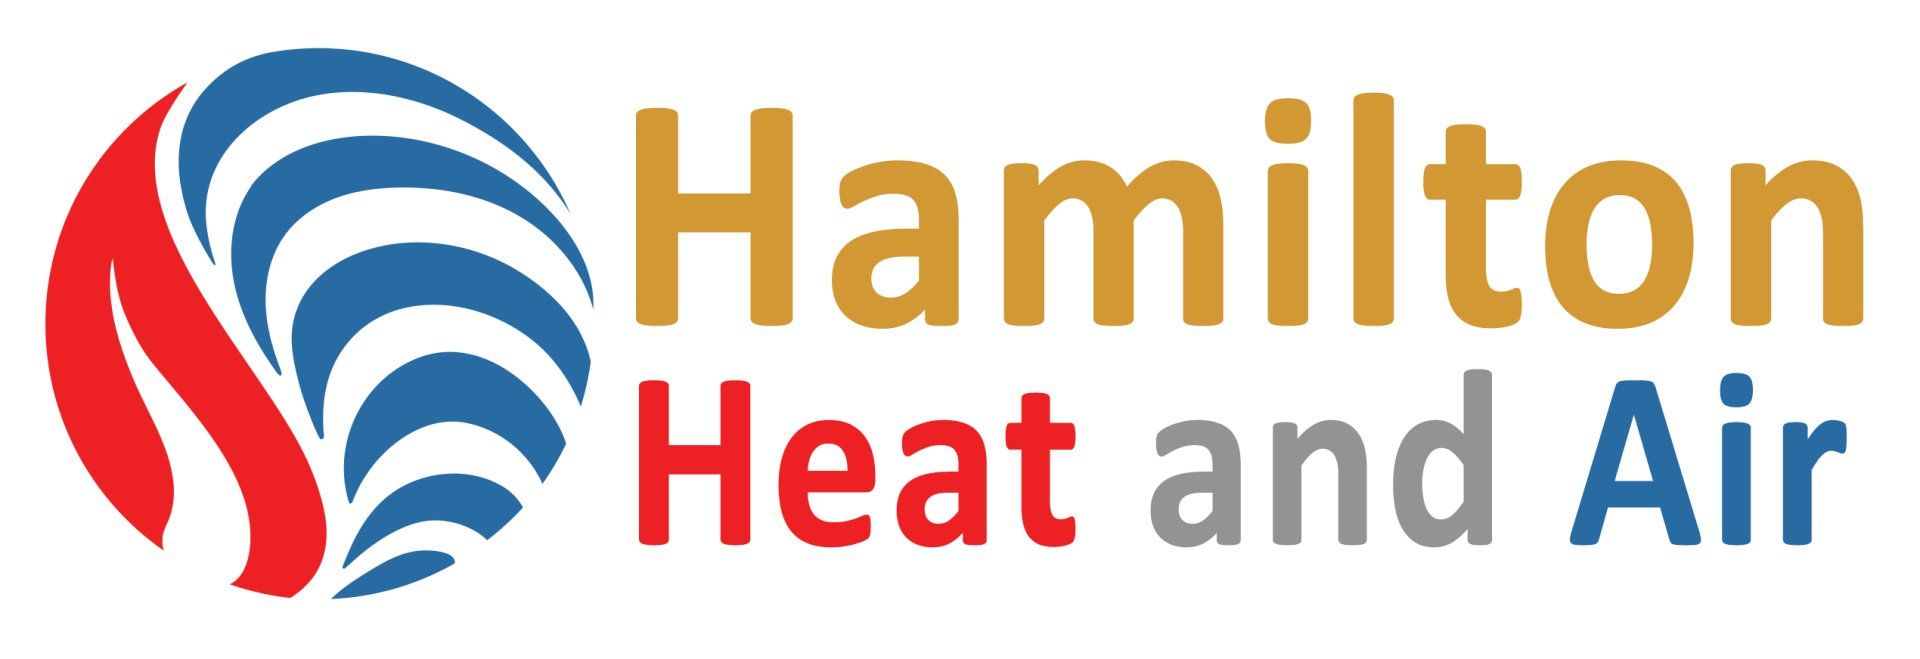 Hamilton Heat and Air